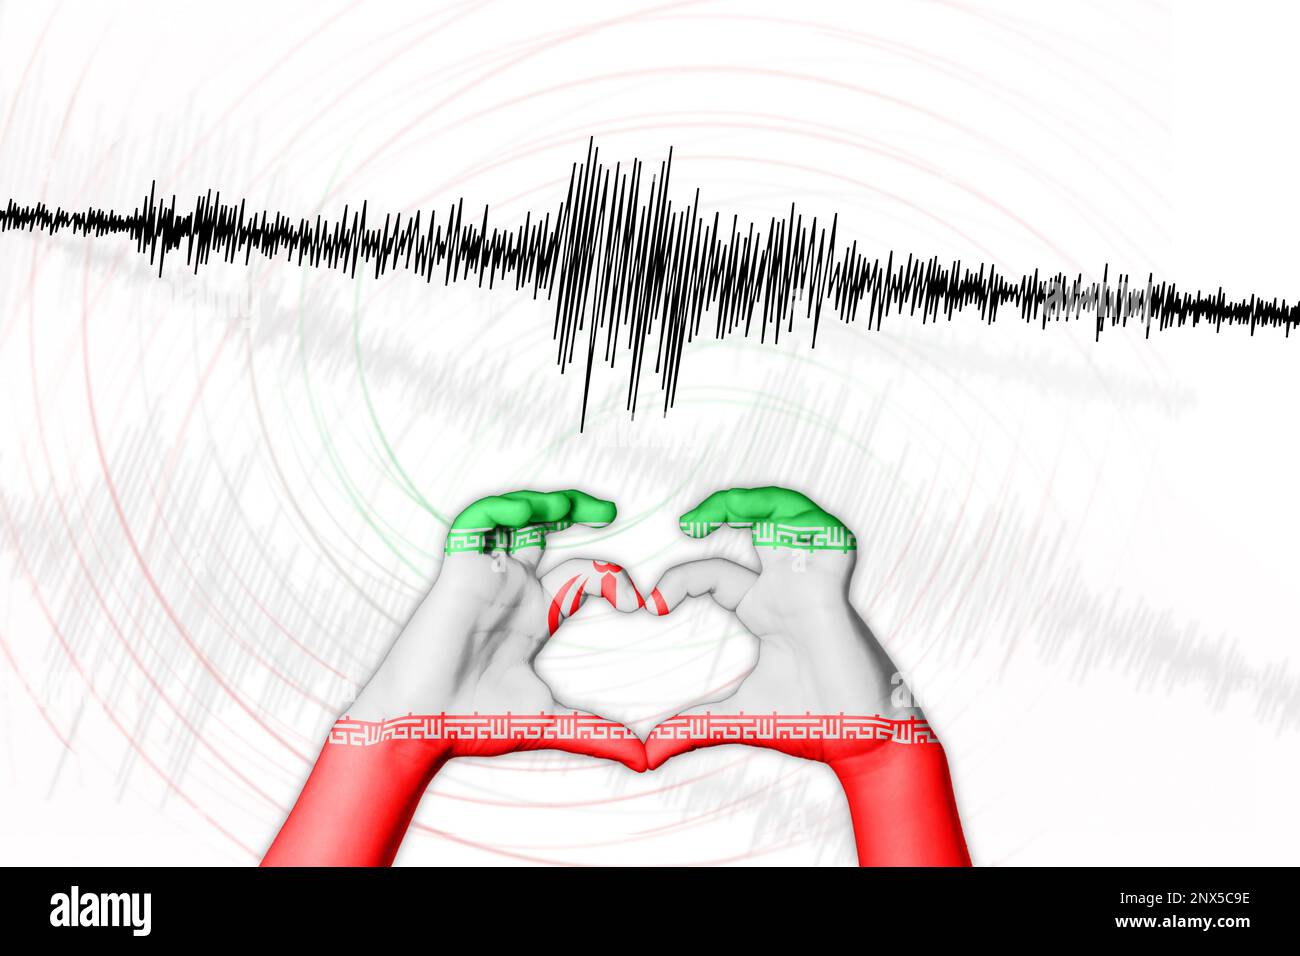 Erdbeben Irans Symbol der Heart Richter Scale Stockfoto